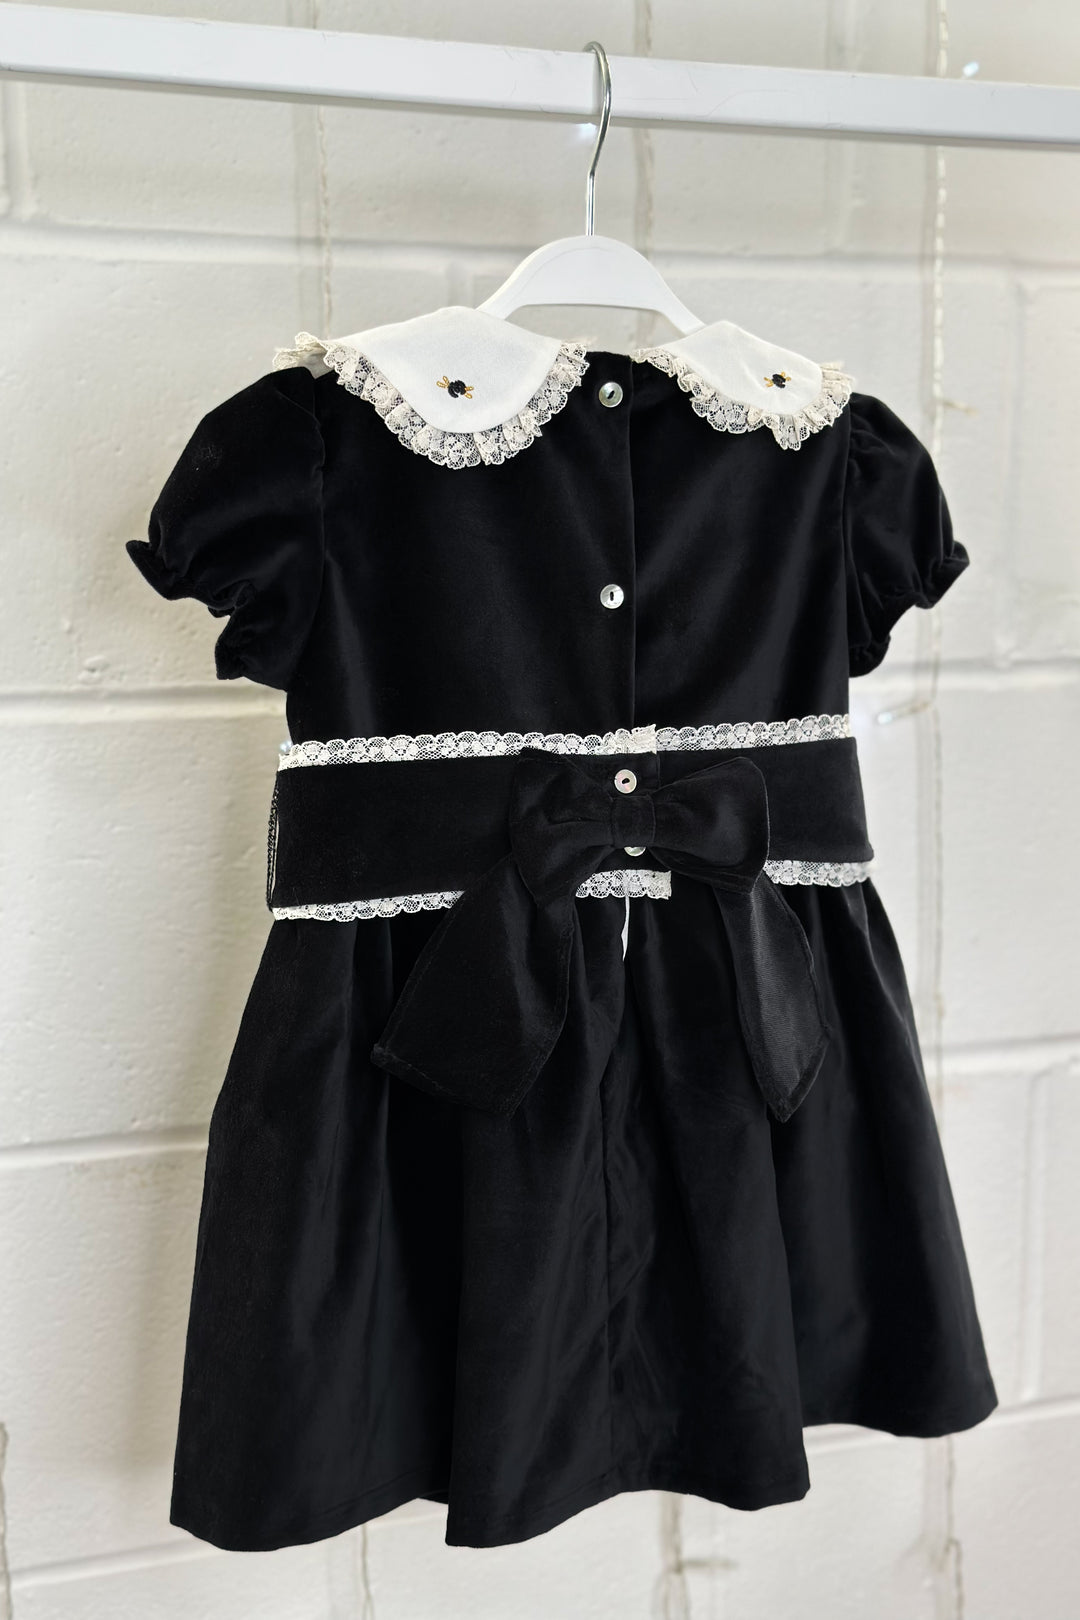 Fofettes "Verity" Black Velvet Embroidered Dress | Millie and John